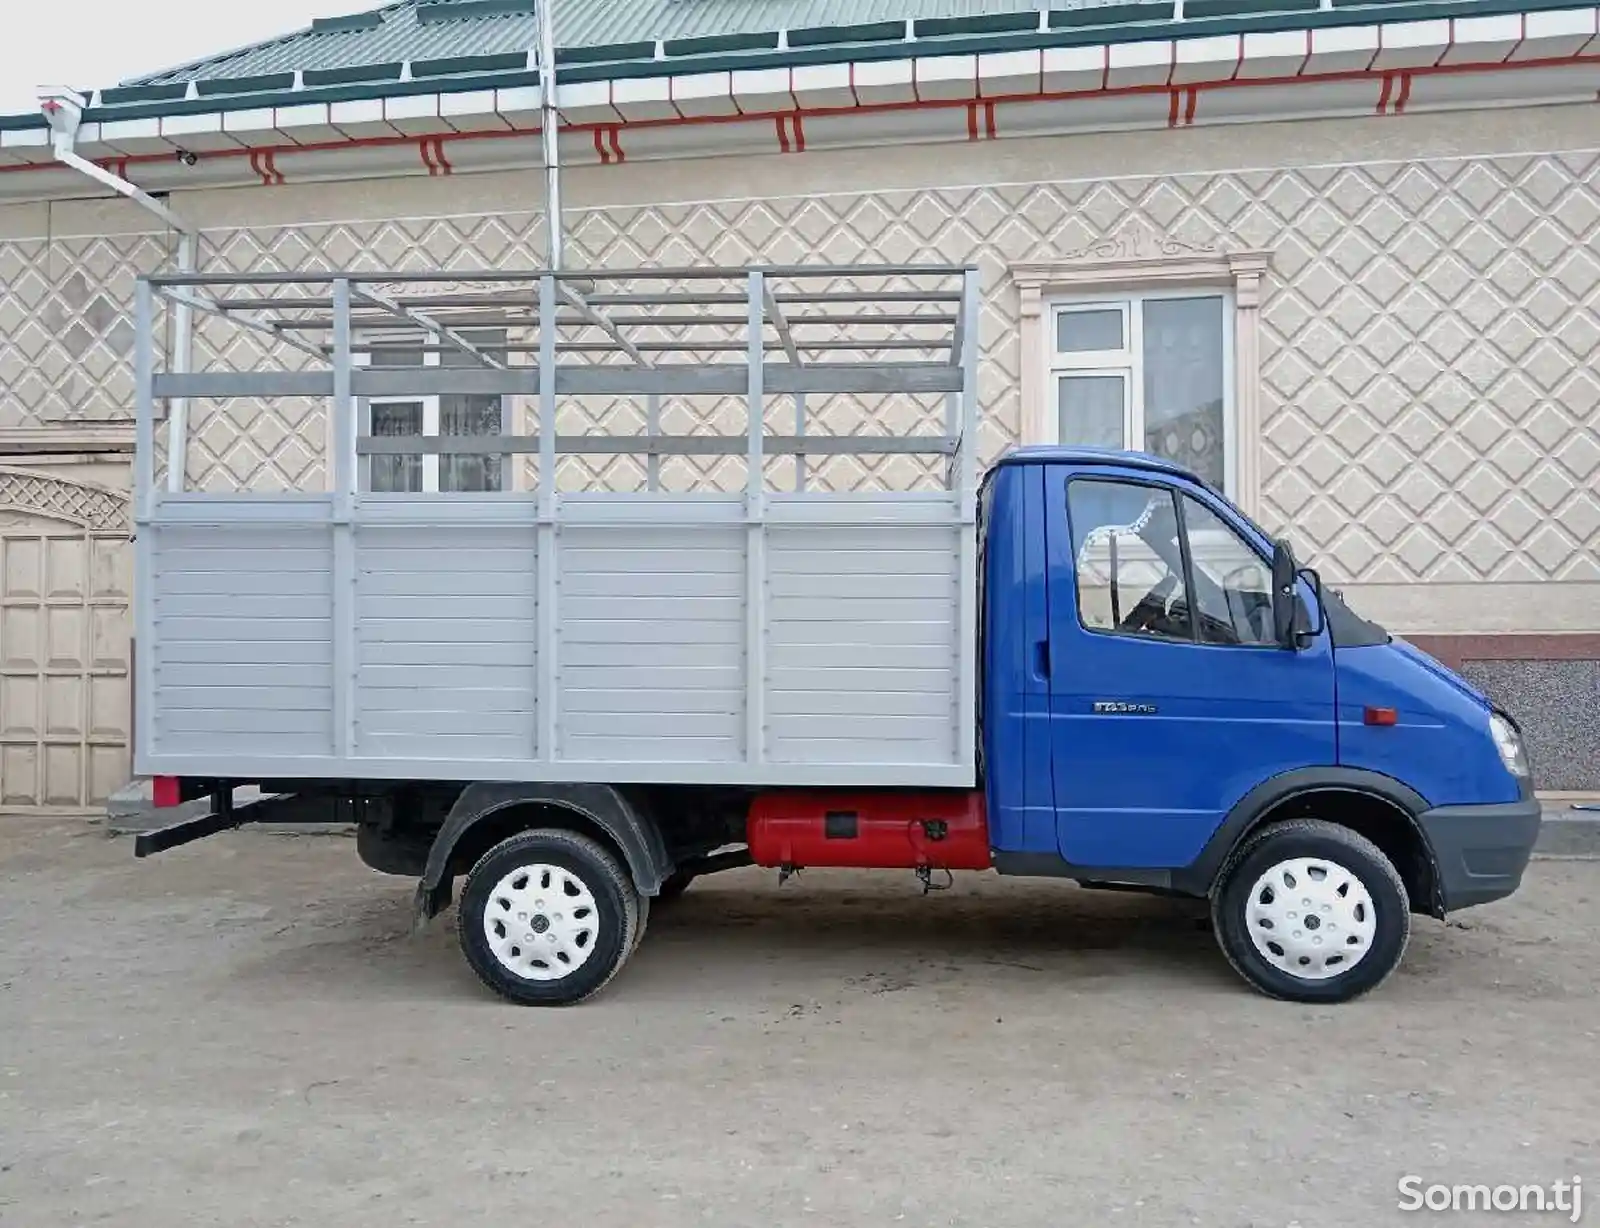 Бортовой грузовик Газель, 2004-2